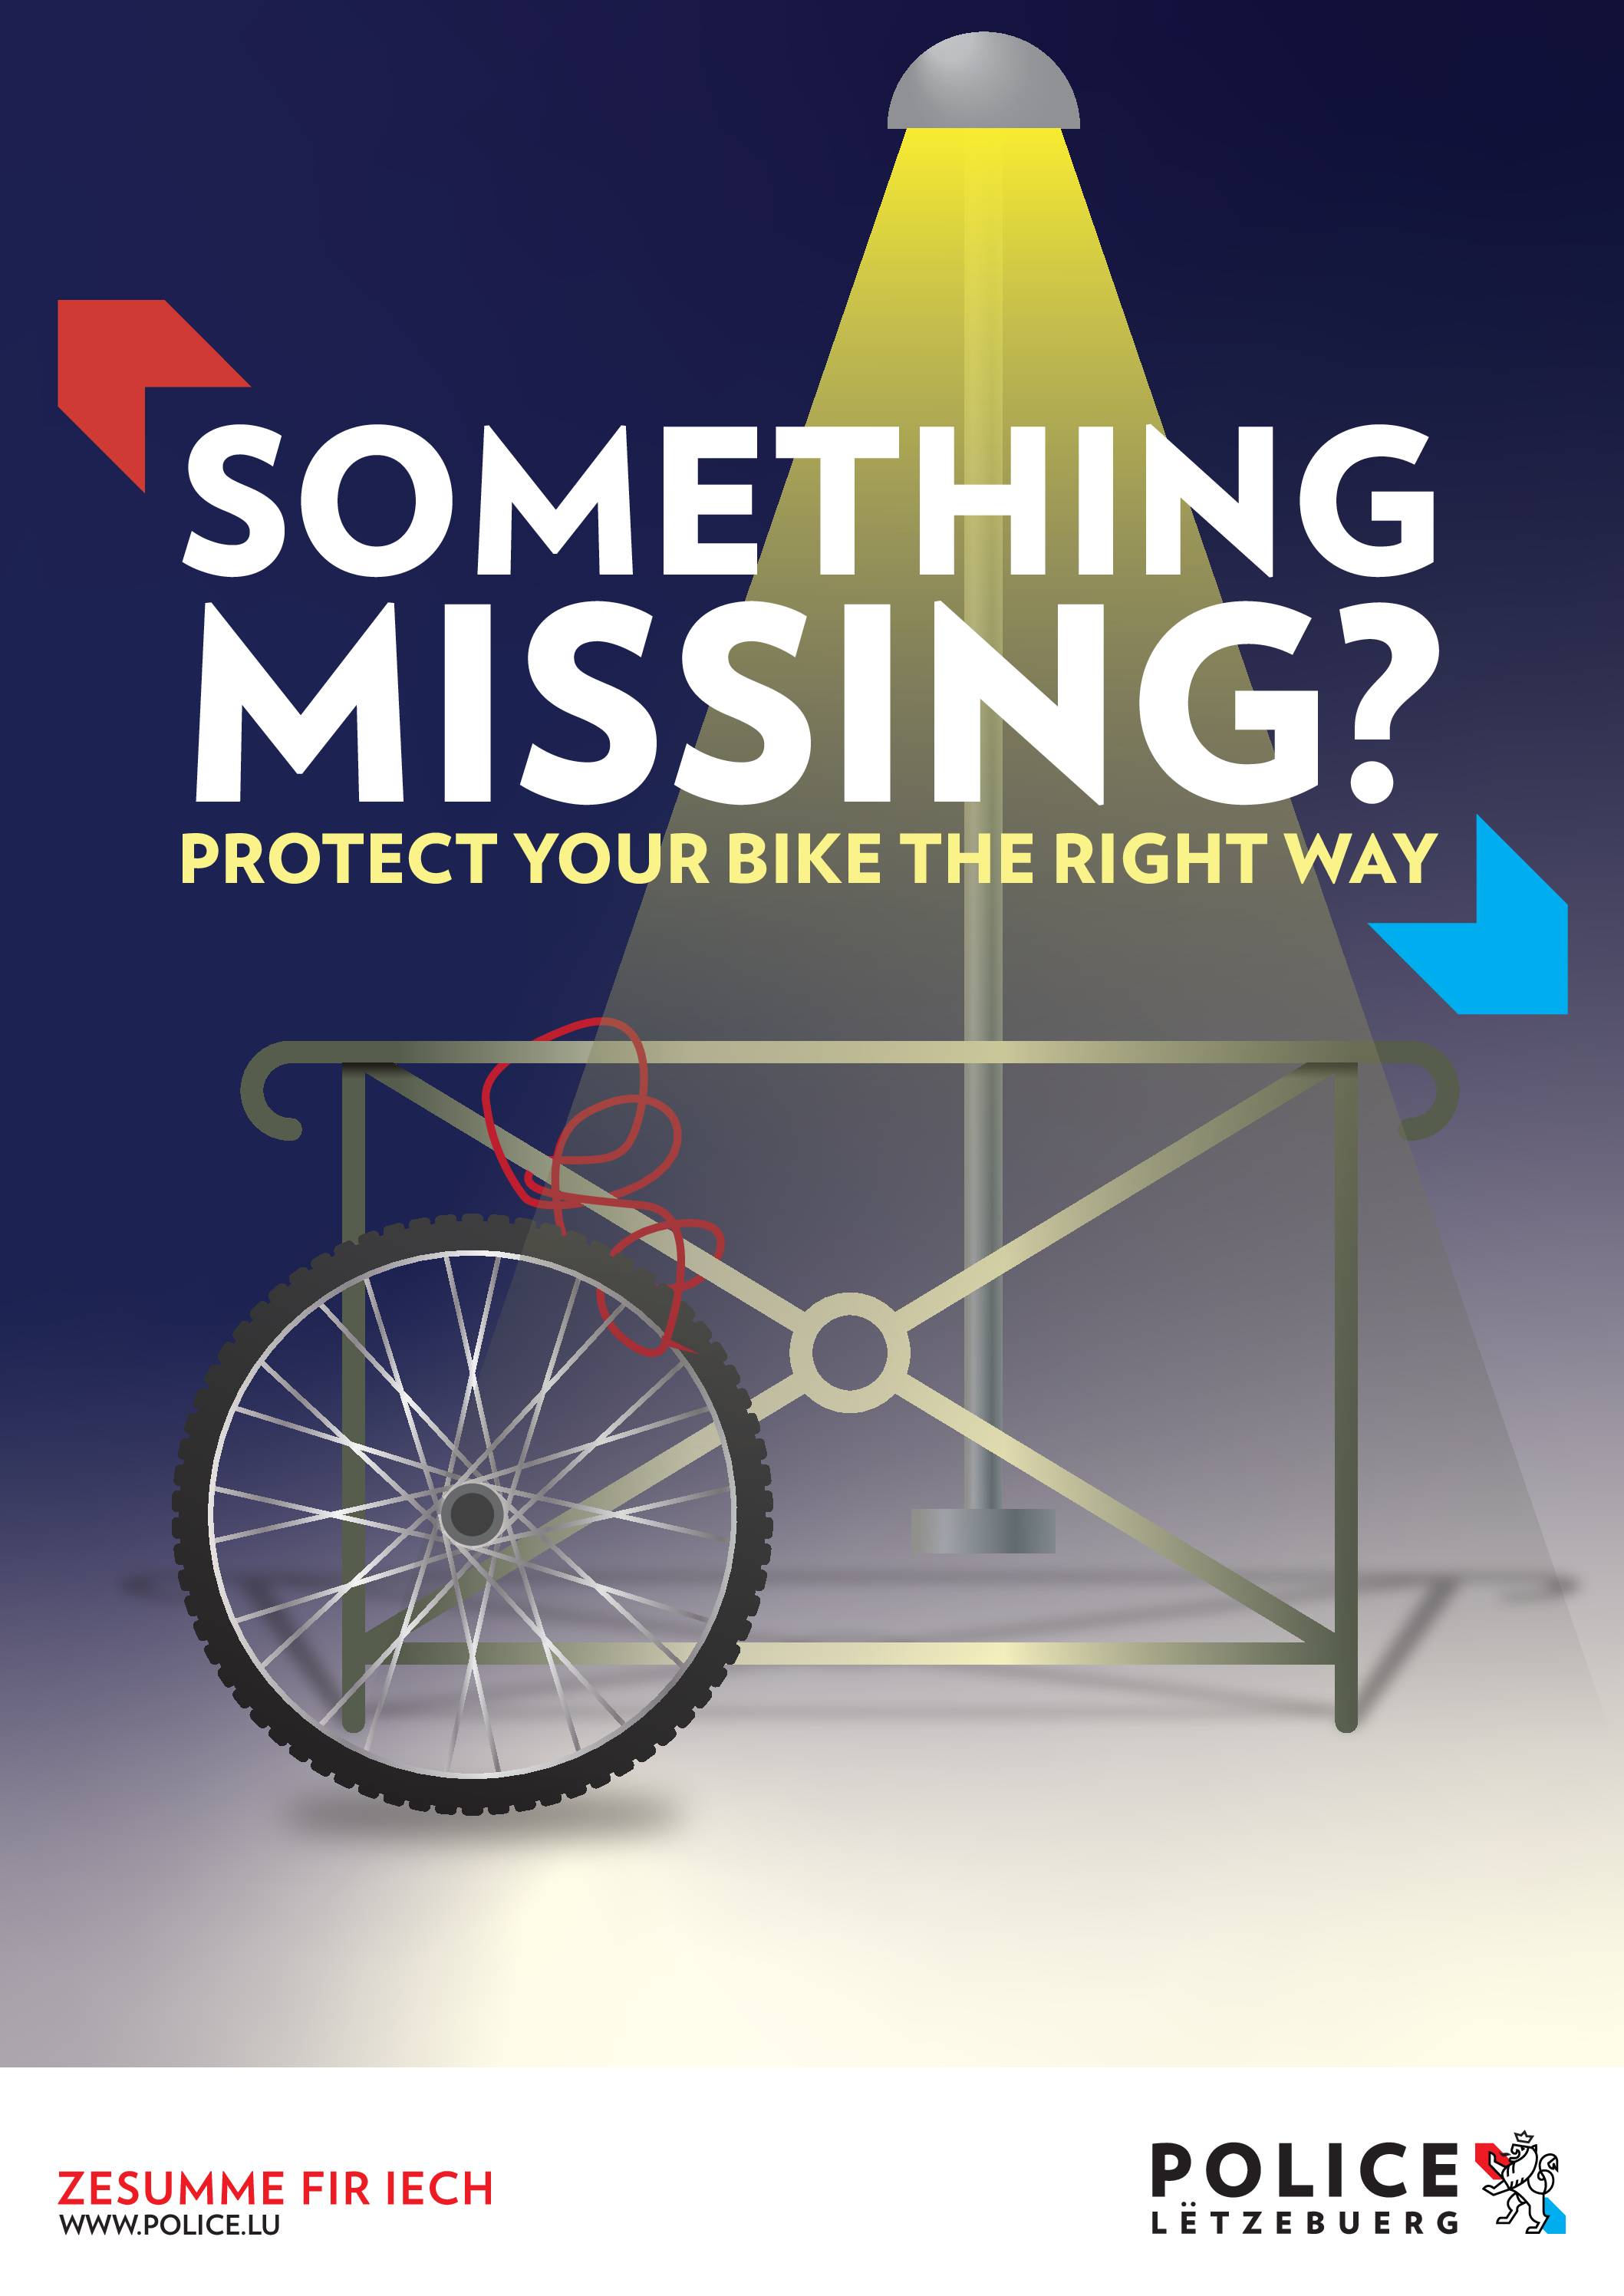 Police Lëtzebuerg – Protection du vélo